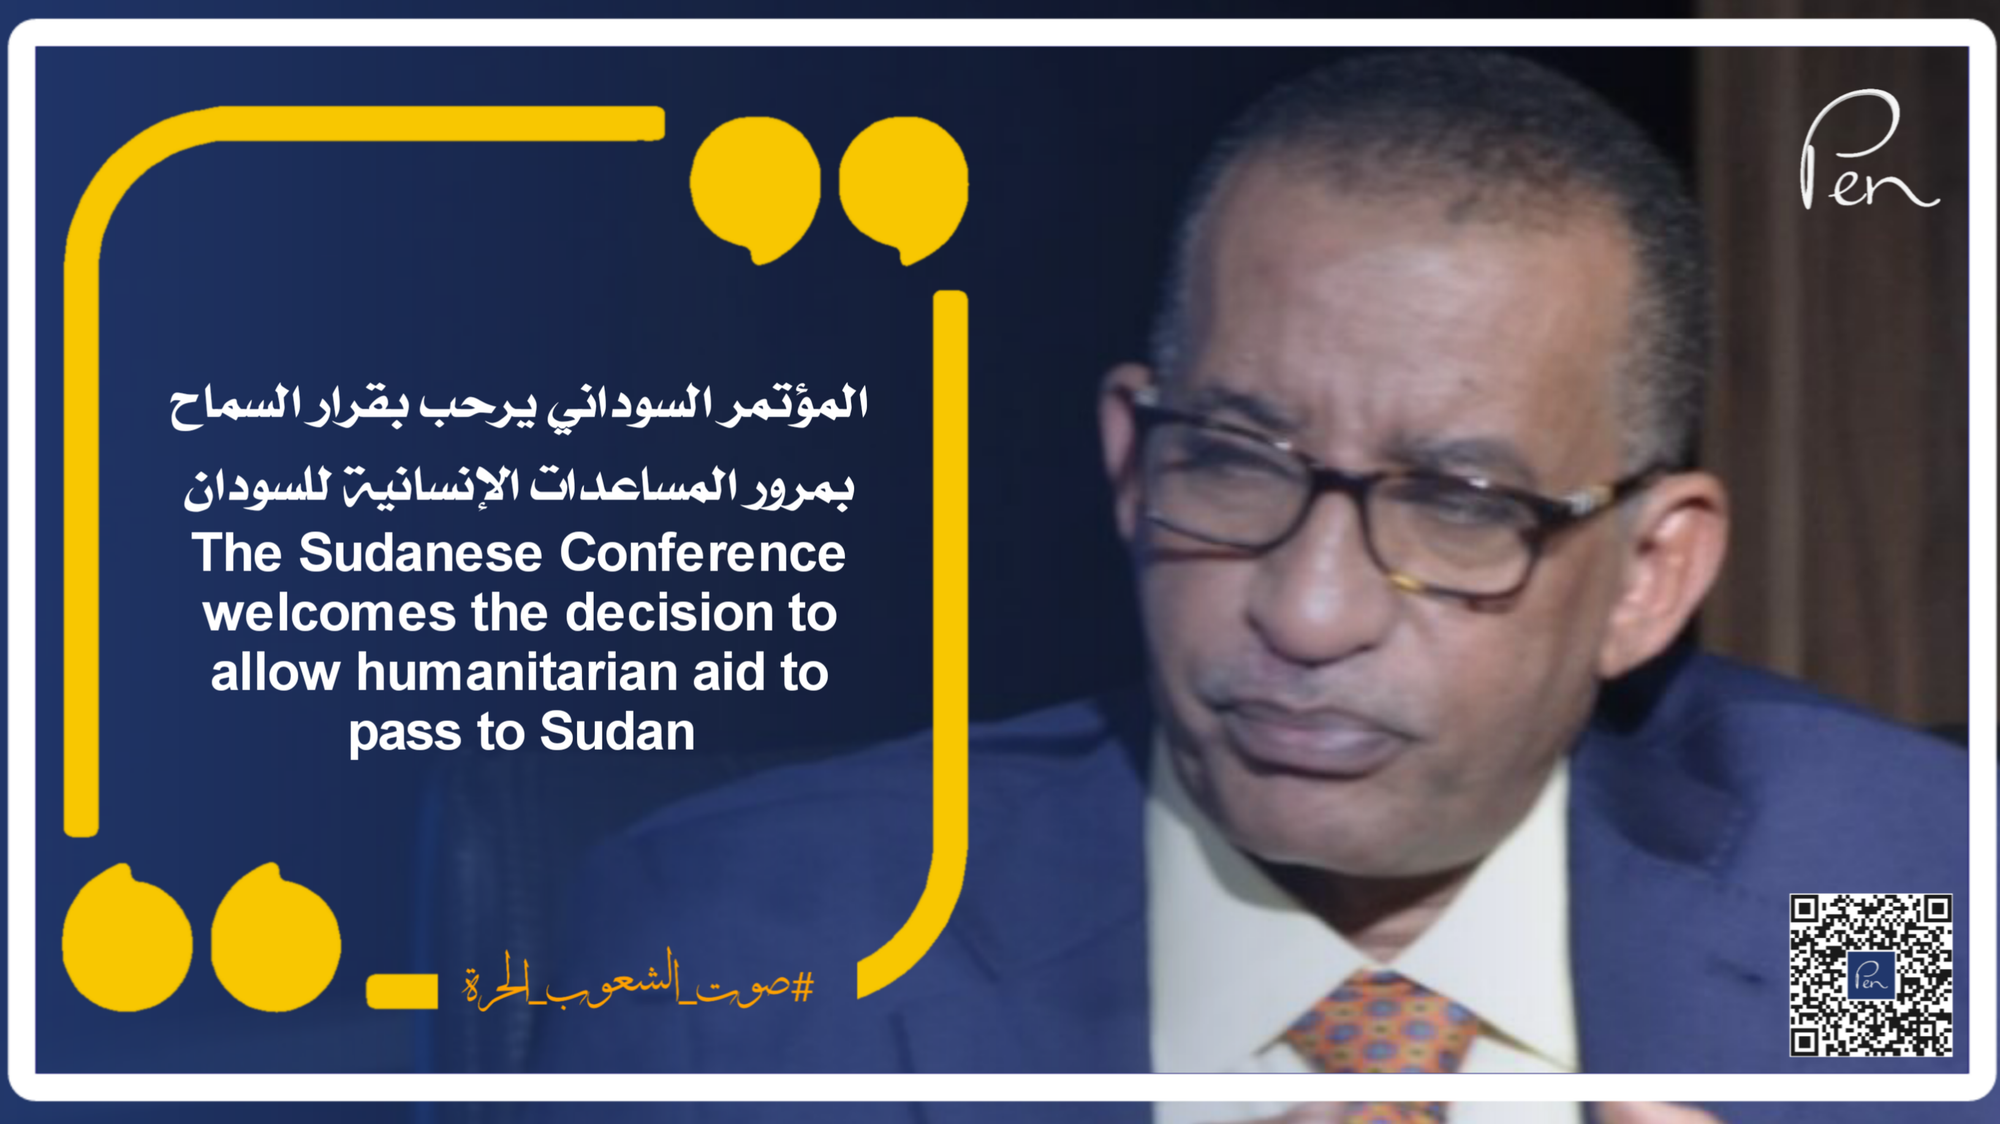 المؤتمر السوداني يرحب بقرار السماح بمرور المساعدات الإنسانية للسودان